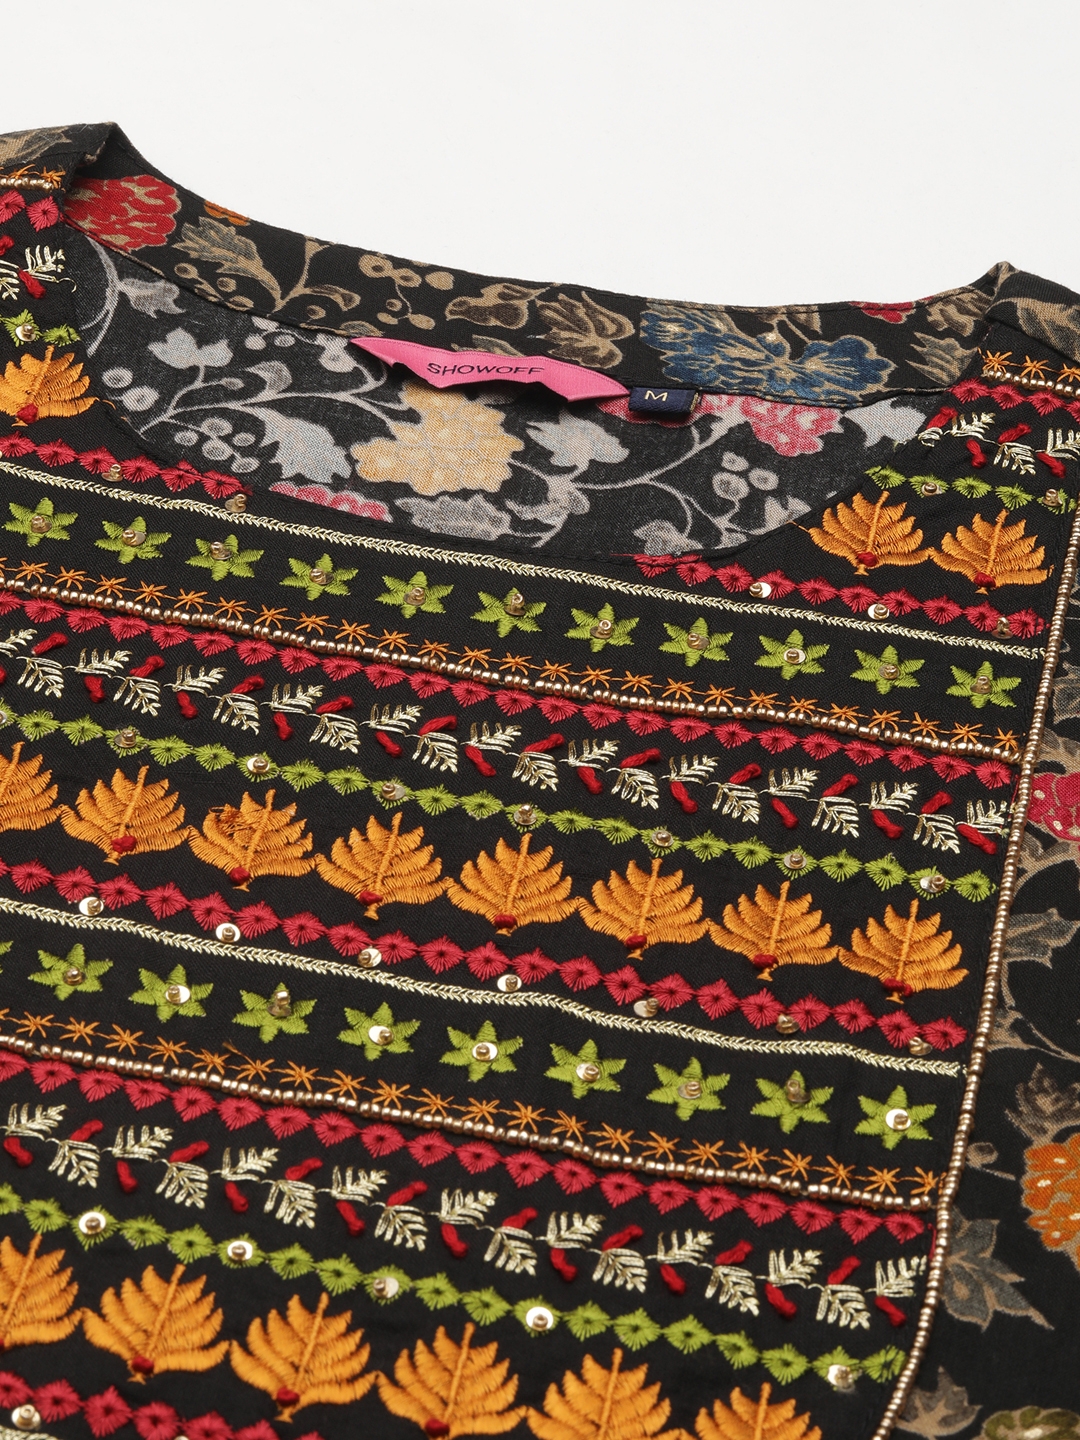 Women's Black Cotton Blend Floral Comfort Fit Kurta Sets